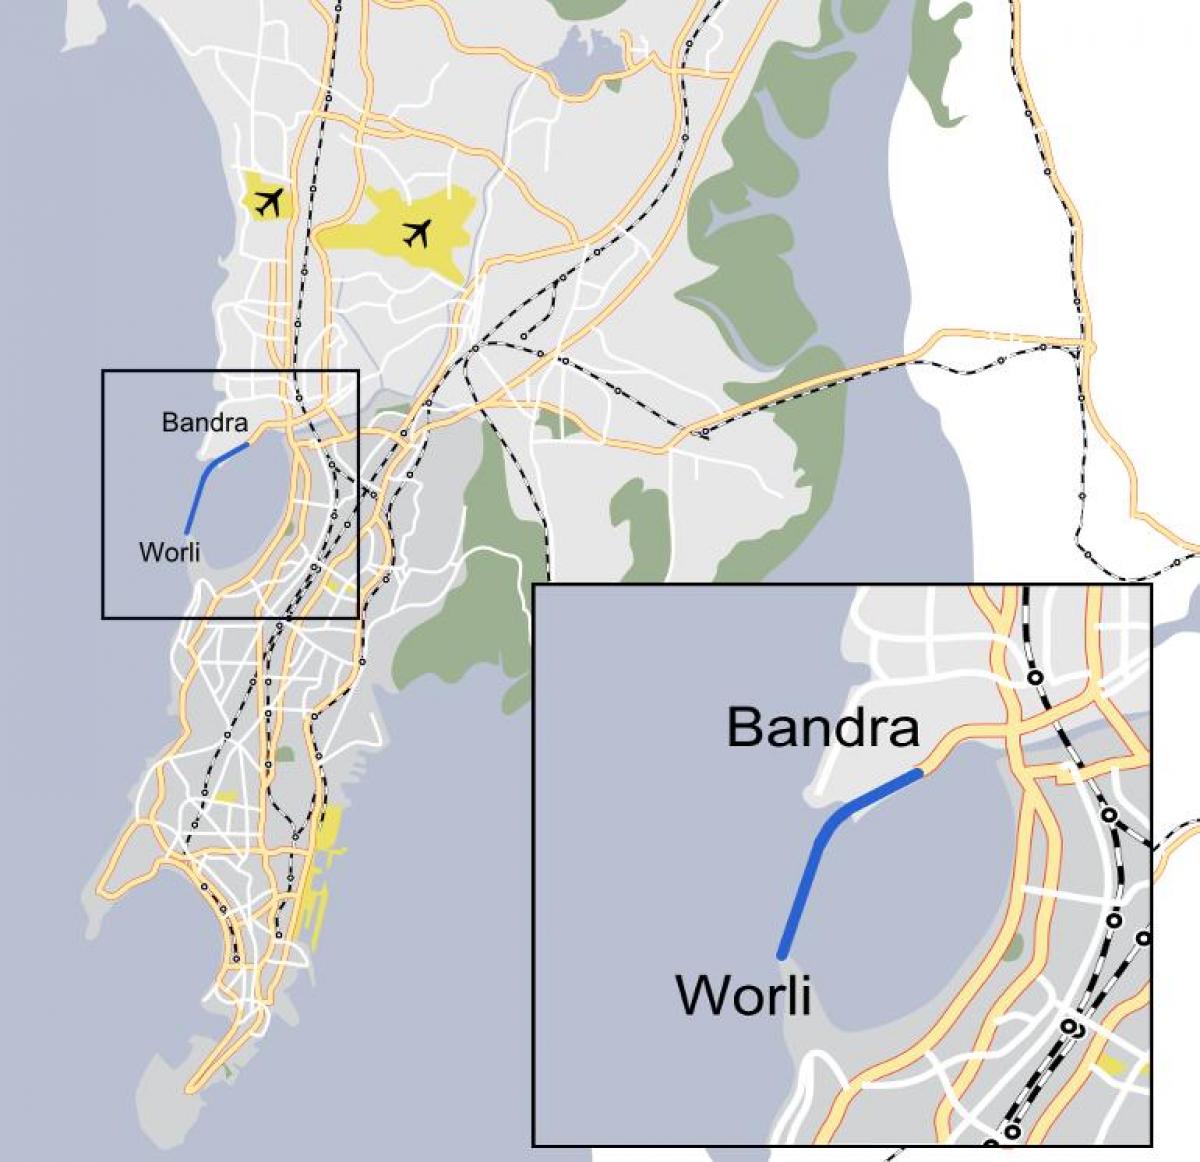 Mumbai Worli რუკა